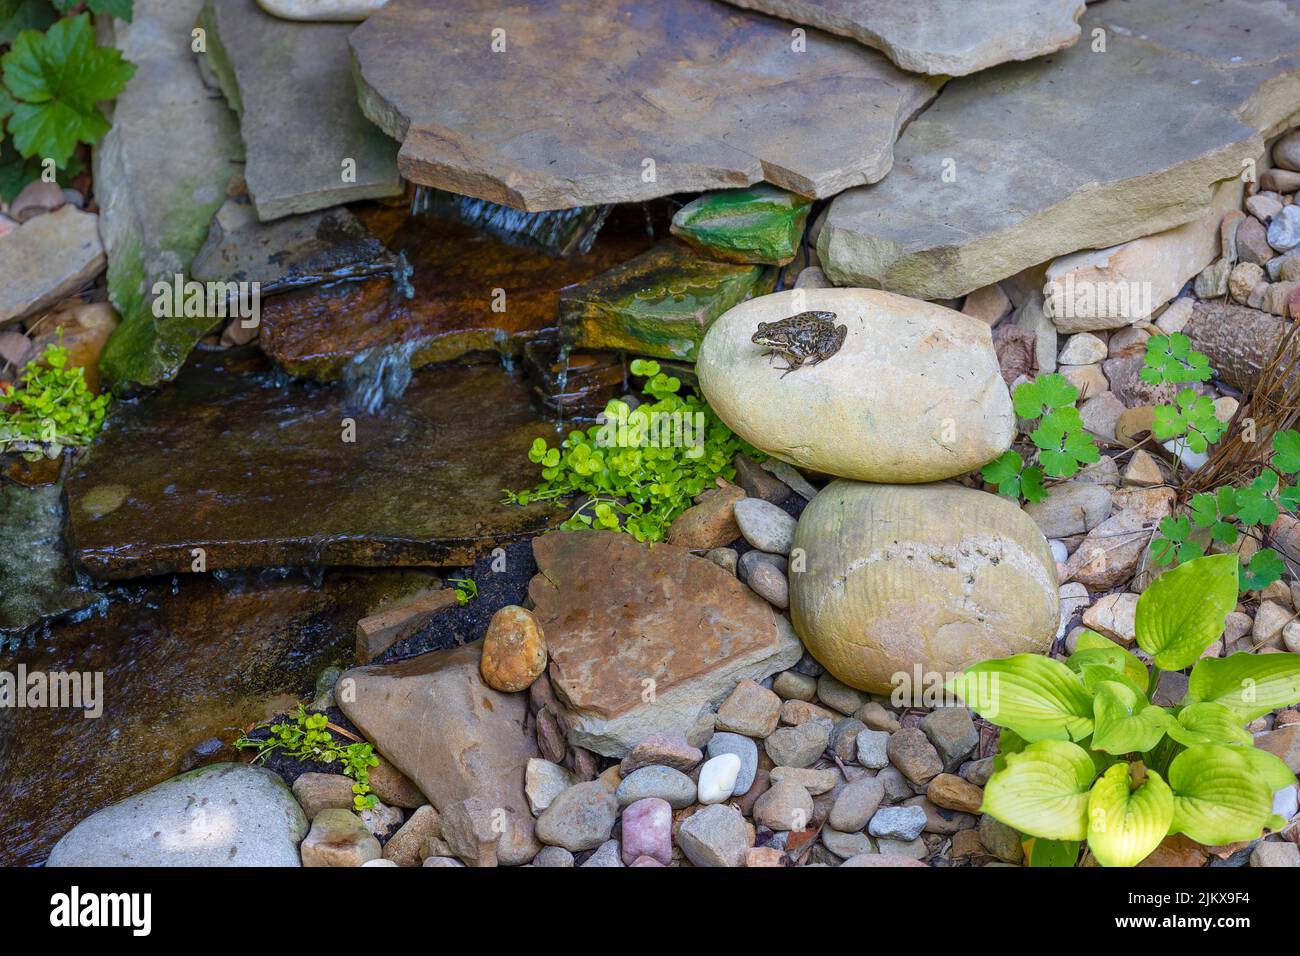 Una rana diminuta se asienta sobre una roca junto a una pequeña fuente de agua en un patio trasero. Foto de stock